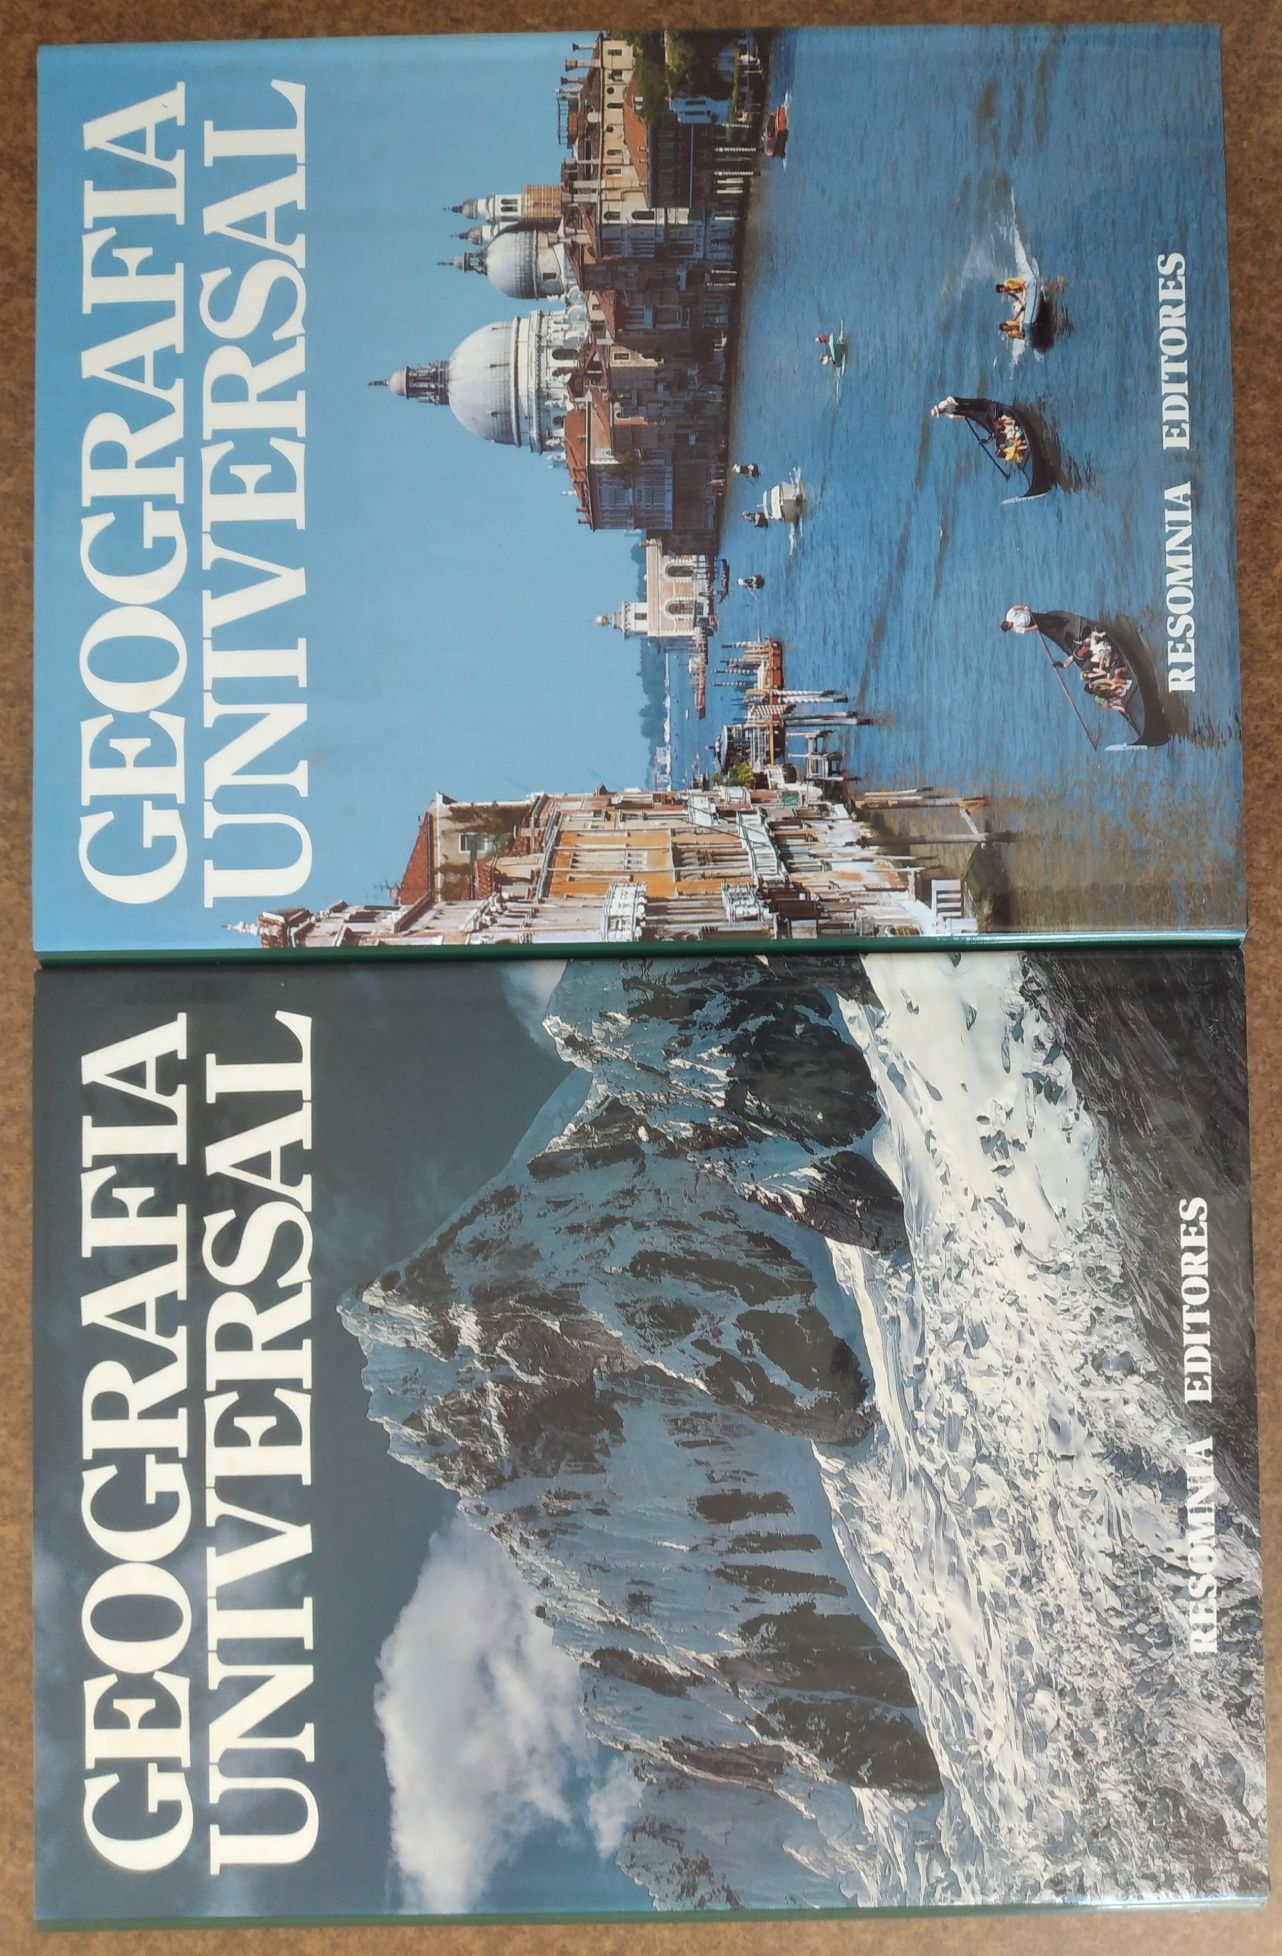 Geografia Universal - 9 livros novos na caixa original